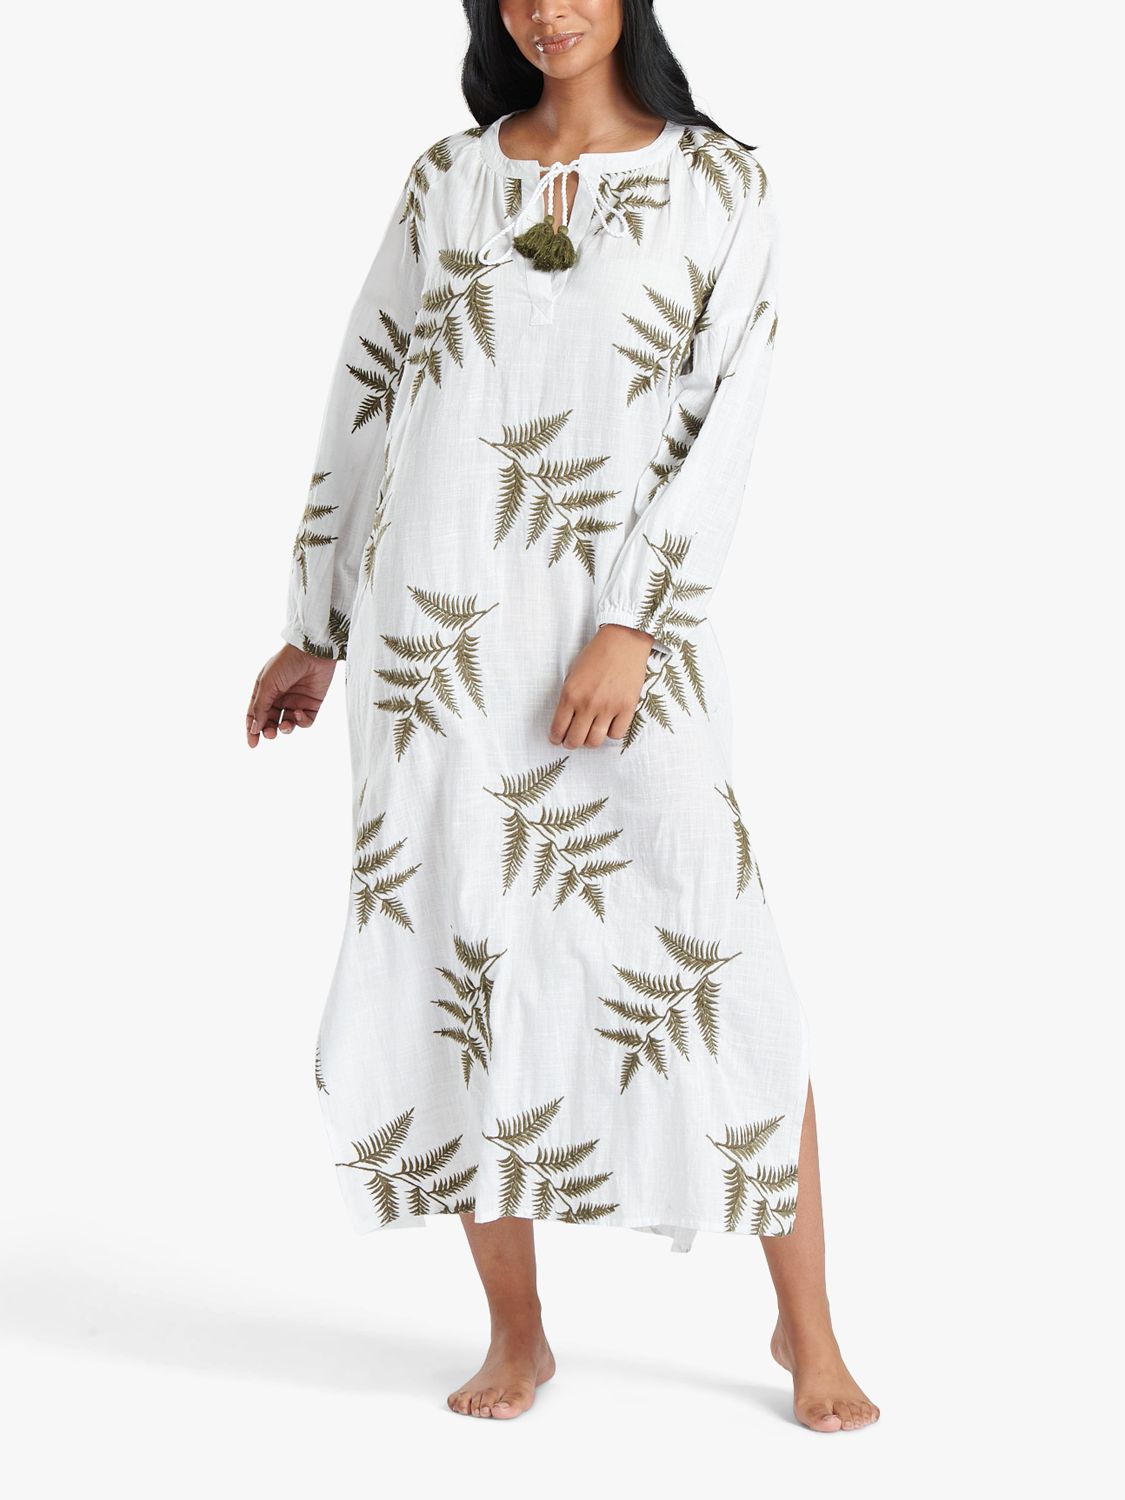 South Beach Leaf Embroidery Beach Maxi Dress, White/Green, 8